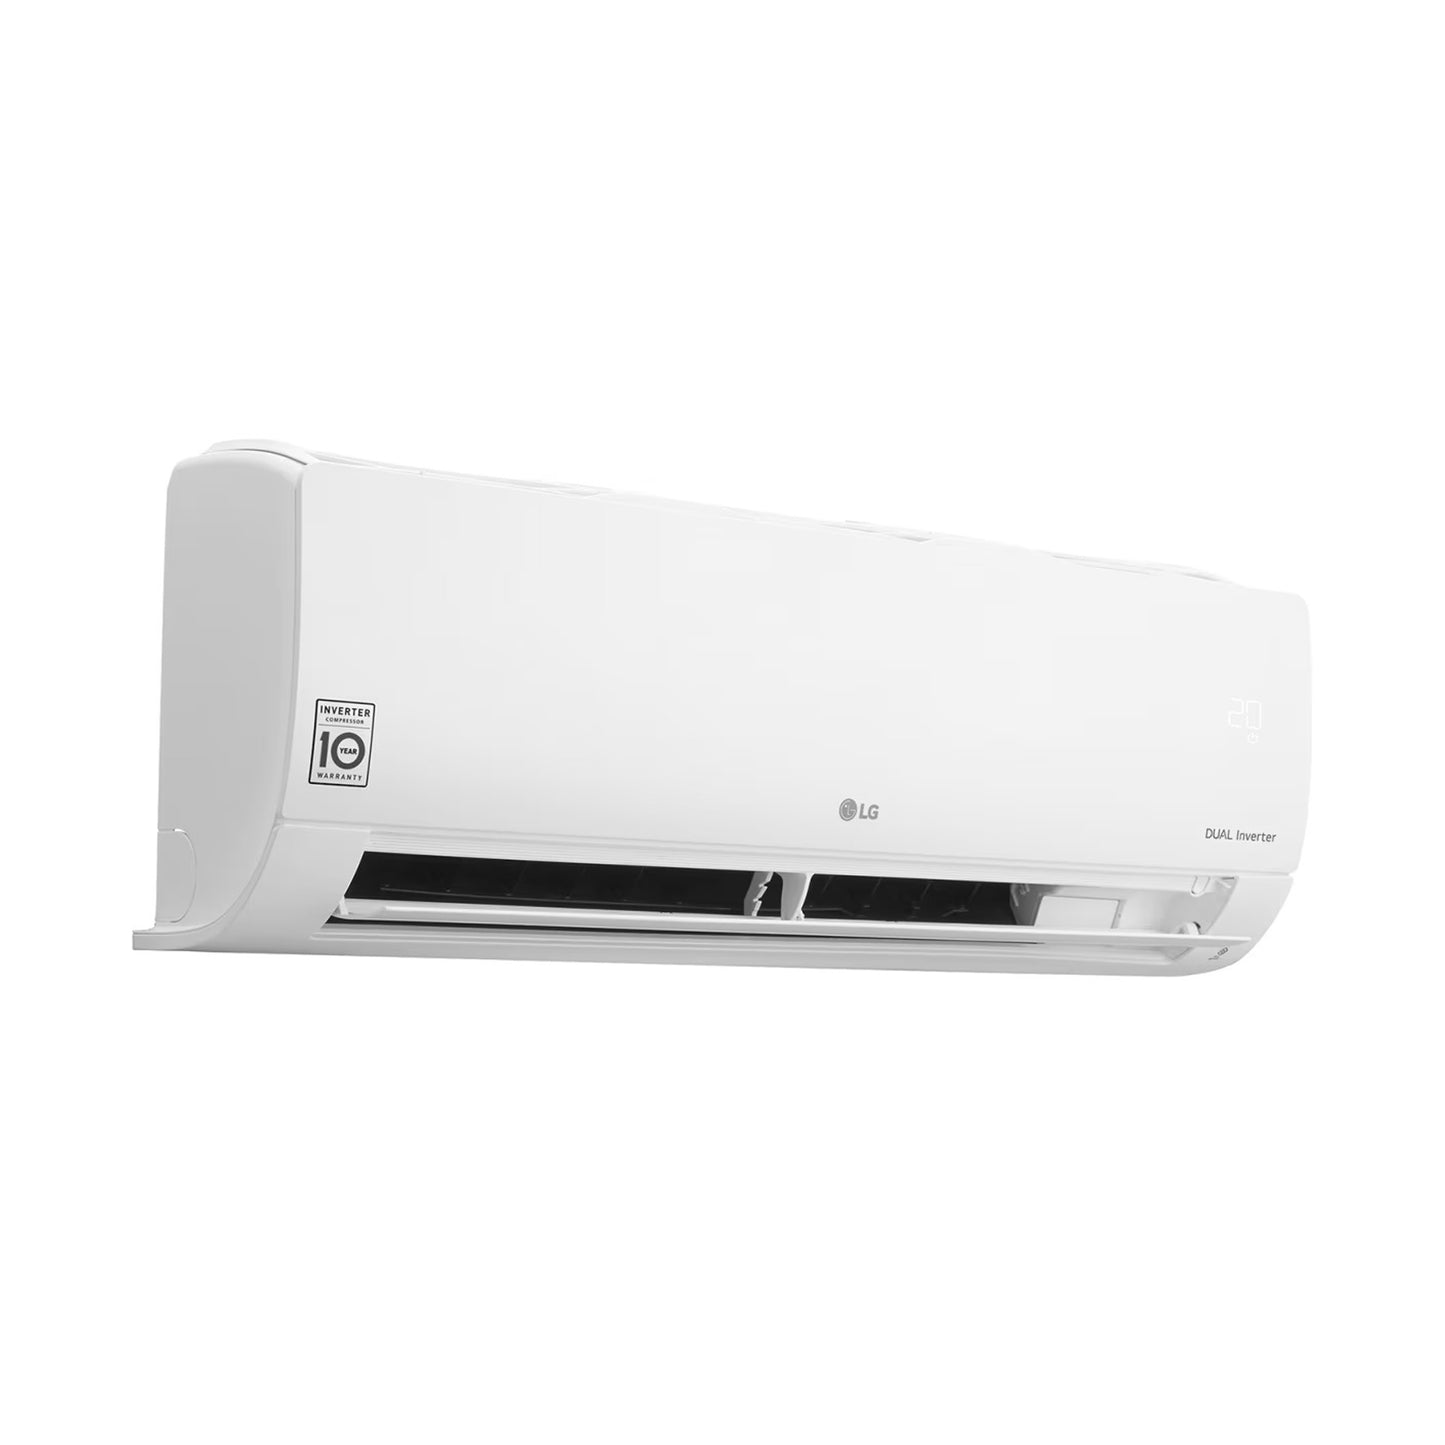 LG 1 Ton Split Air Conditioner